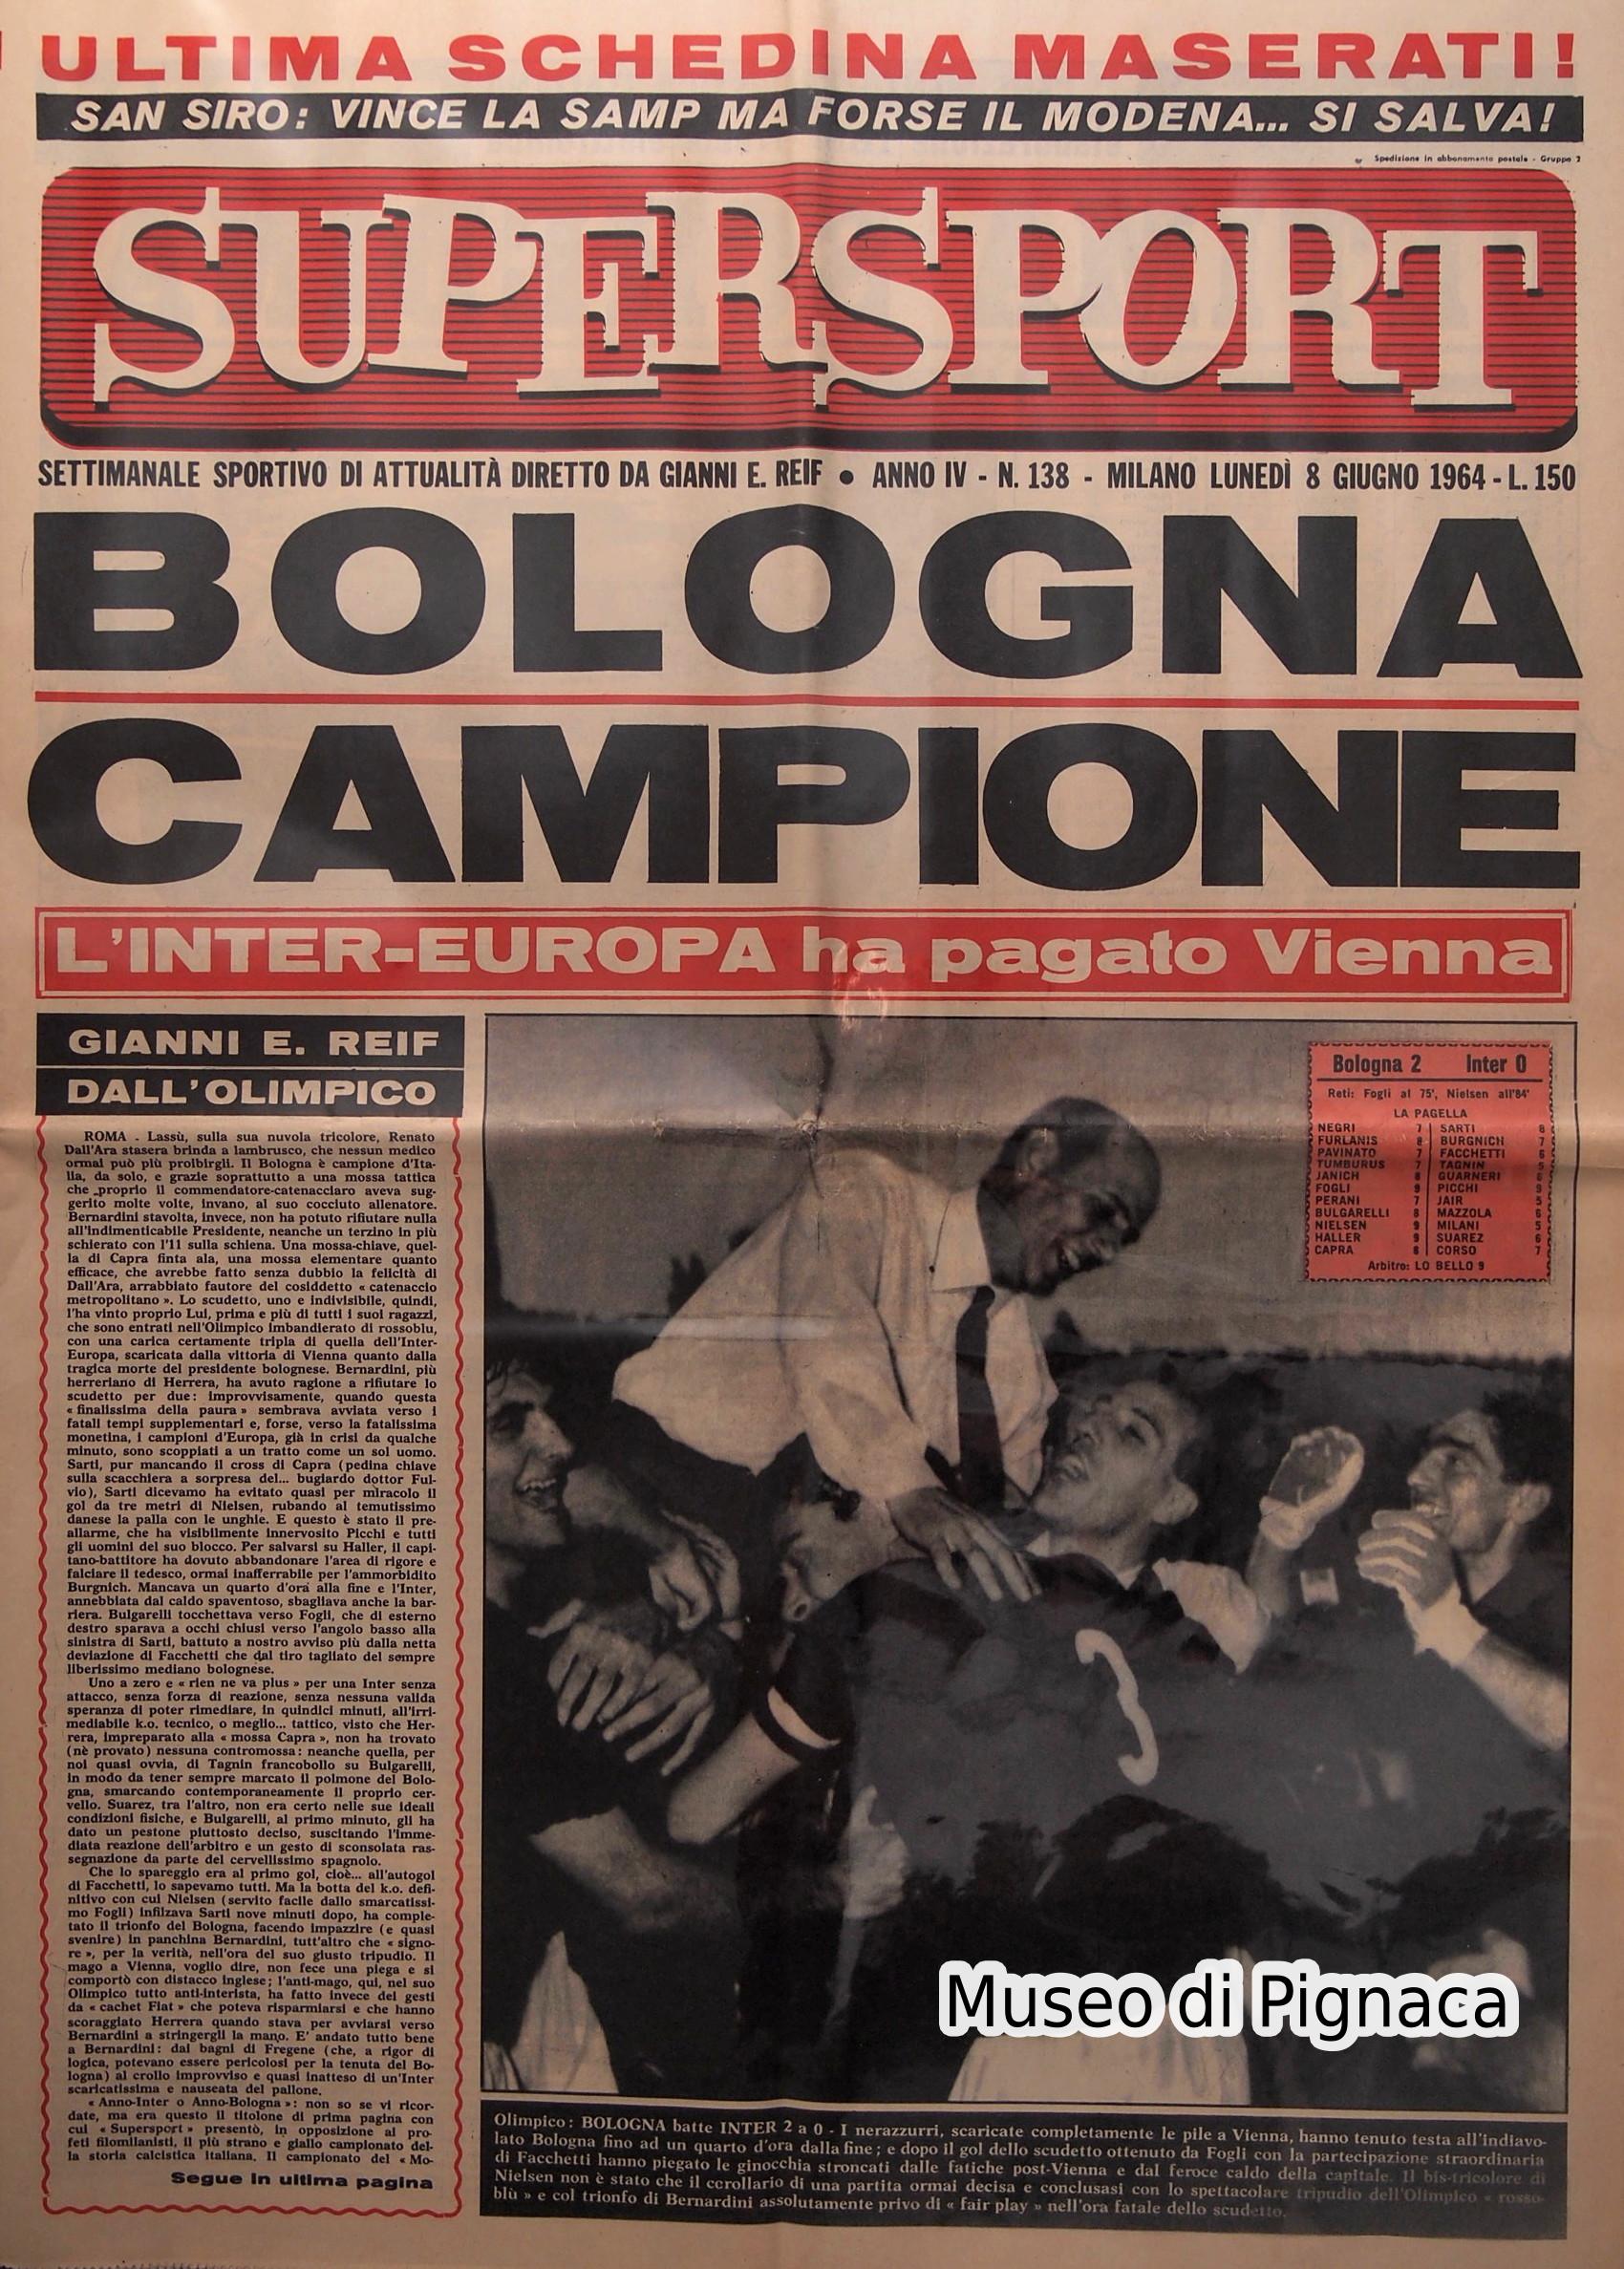 1964 SUPERSPORT rende omaggio al Bologna Campione